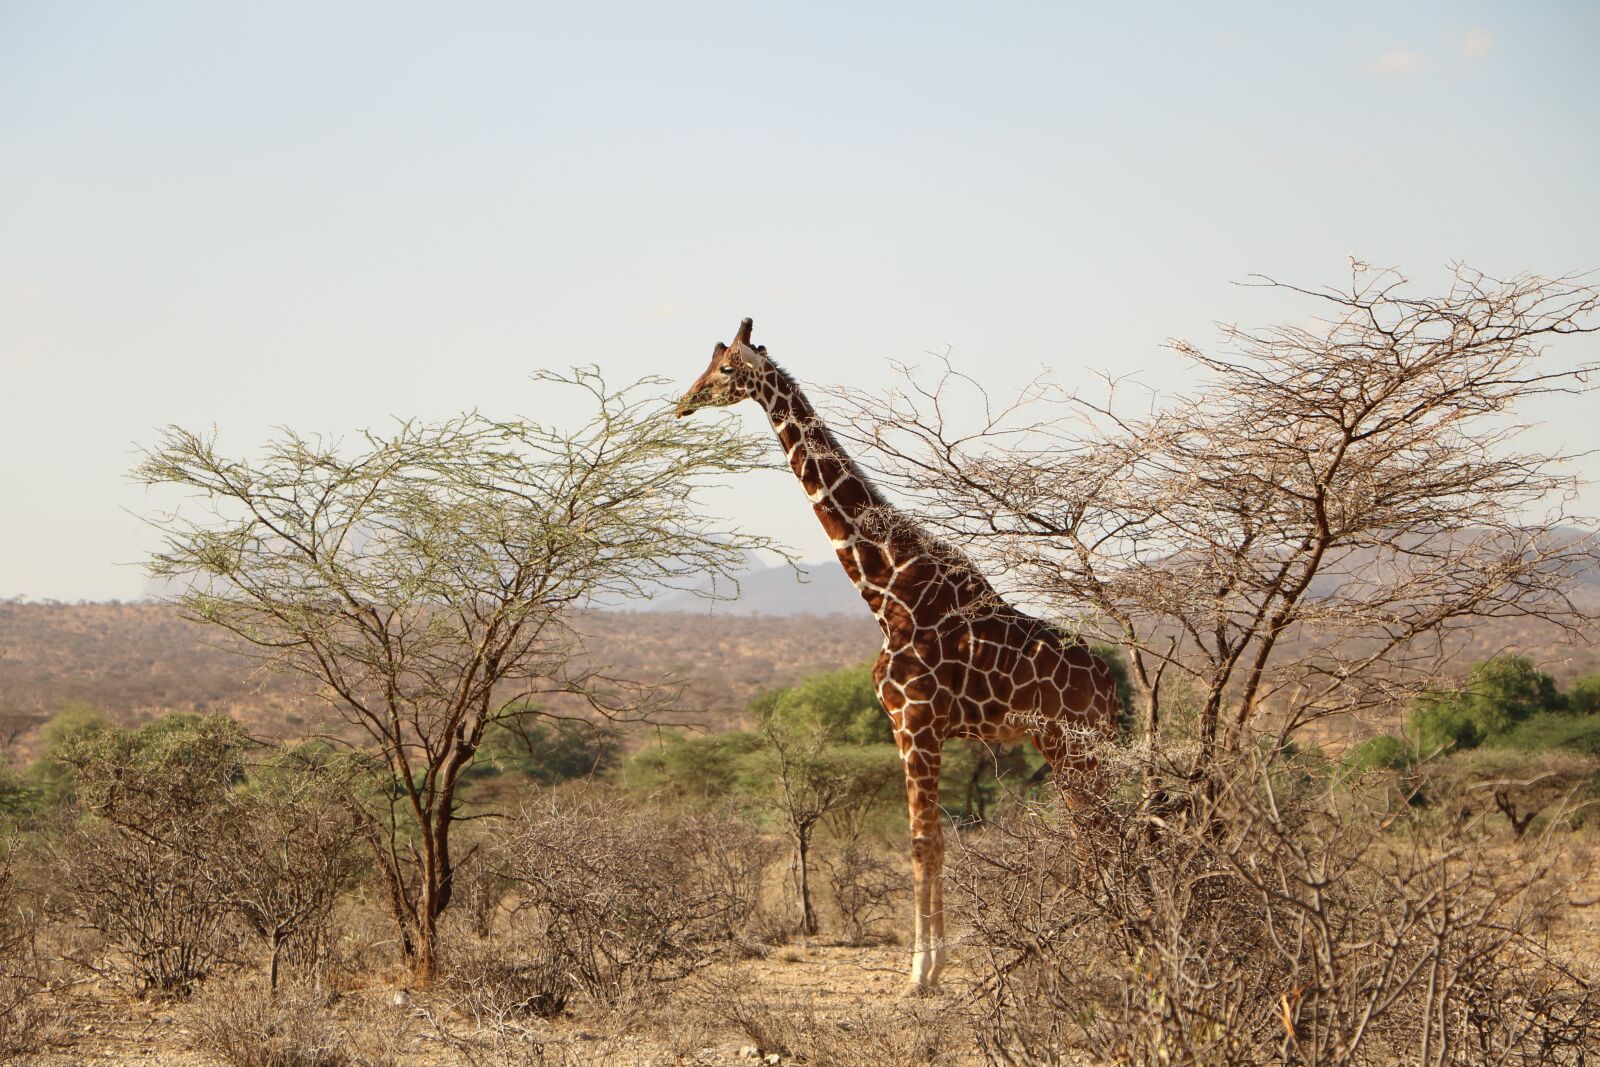 Canon EOS 760D (EOS Rebel T6s / EOS 8000D) sample photo. Giraffe, safari, animal photography